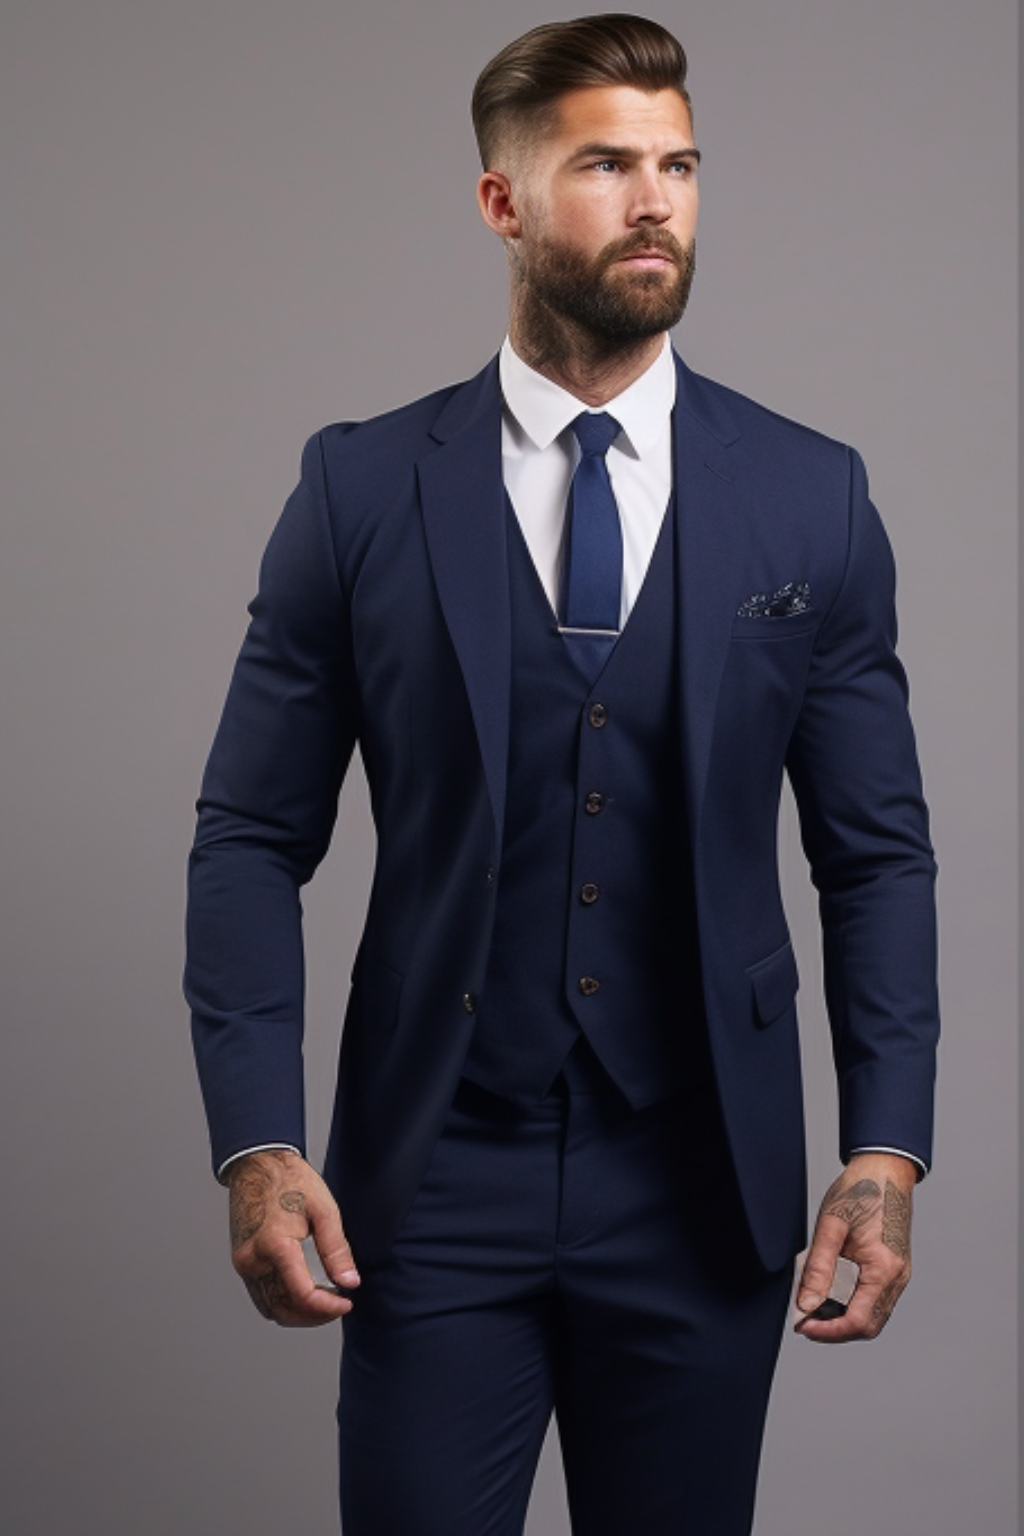 Formal Men's Suit Set Notch Jacket Pants 2 Piece Wedding Party Slim Fit  Outfits